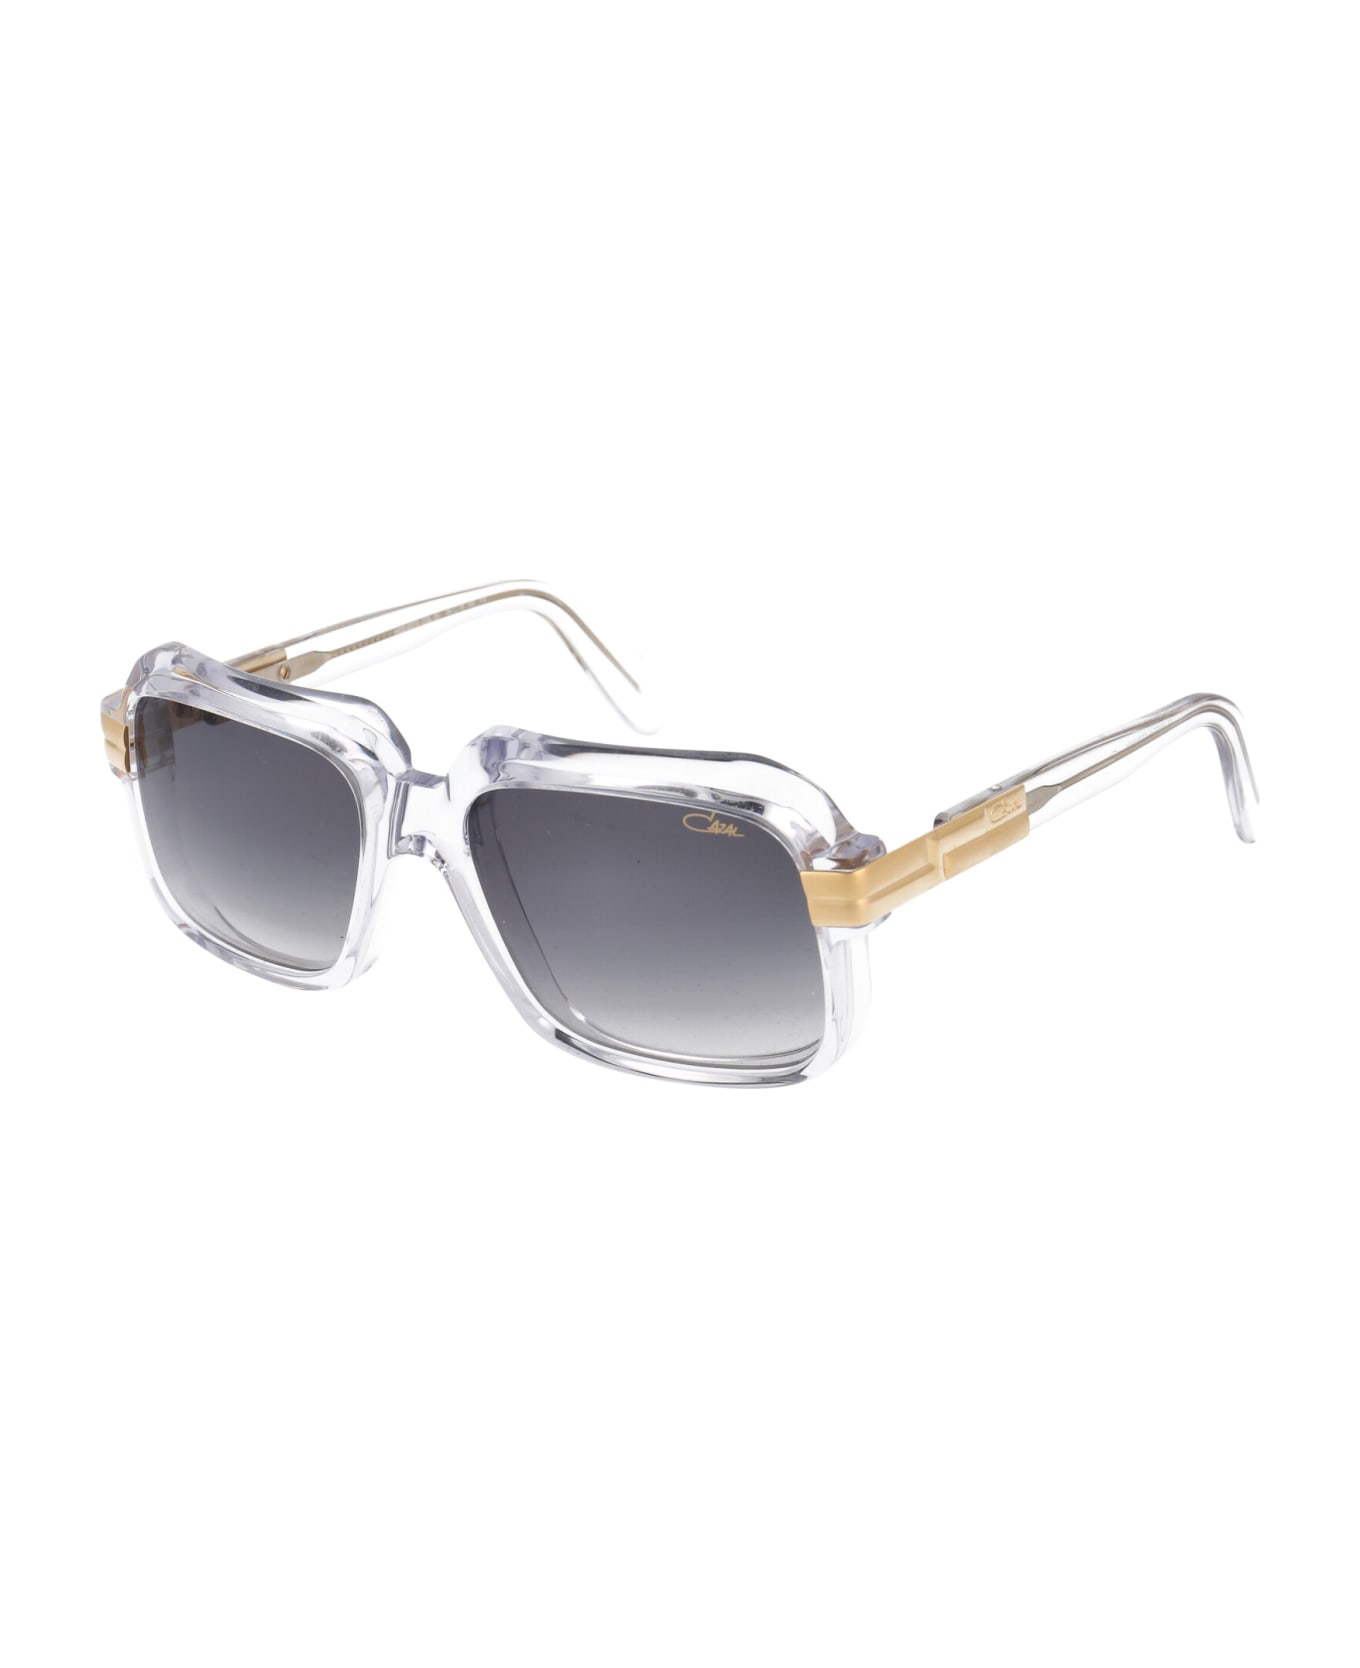 Cazal Mod. 607/3 Sunglasses - 065 CRYSTAL